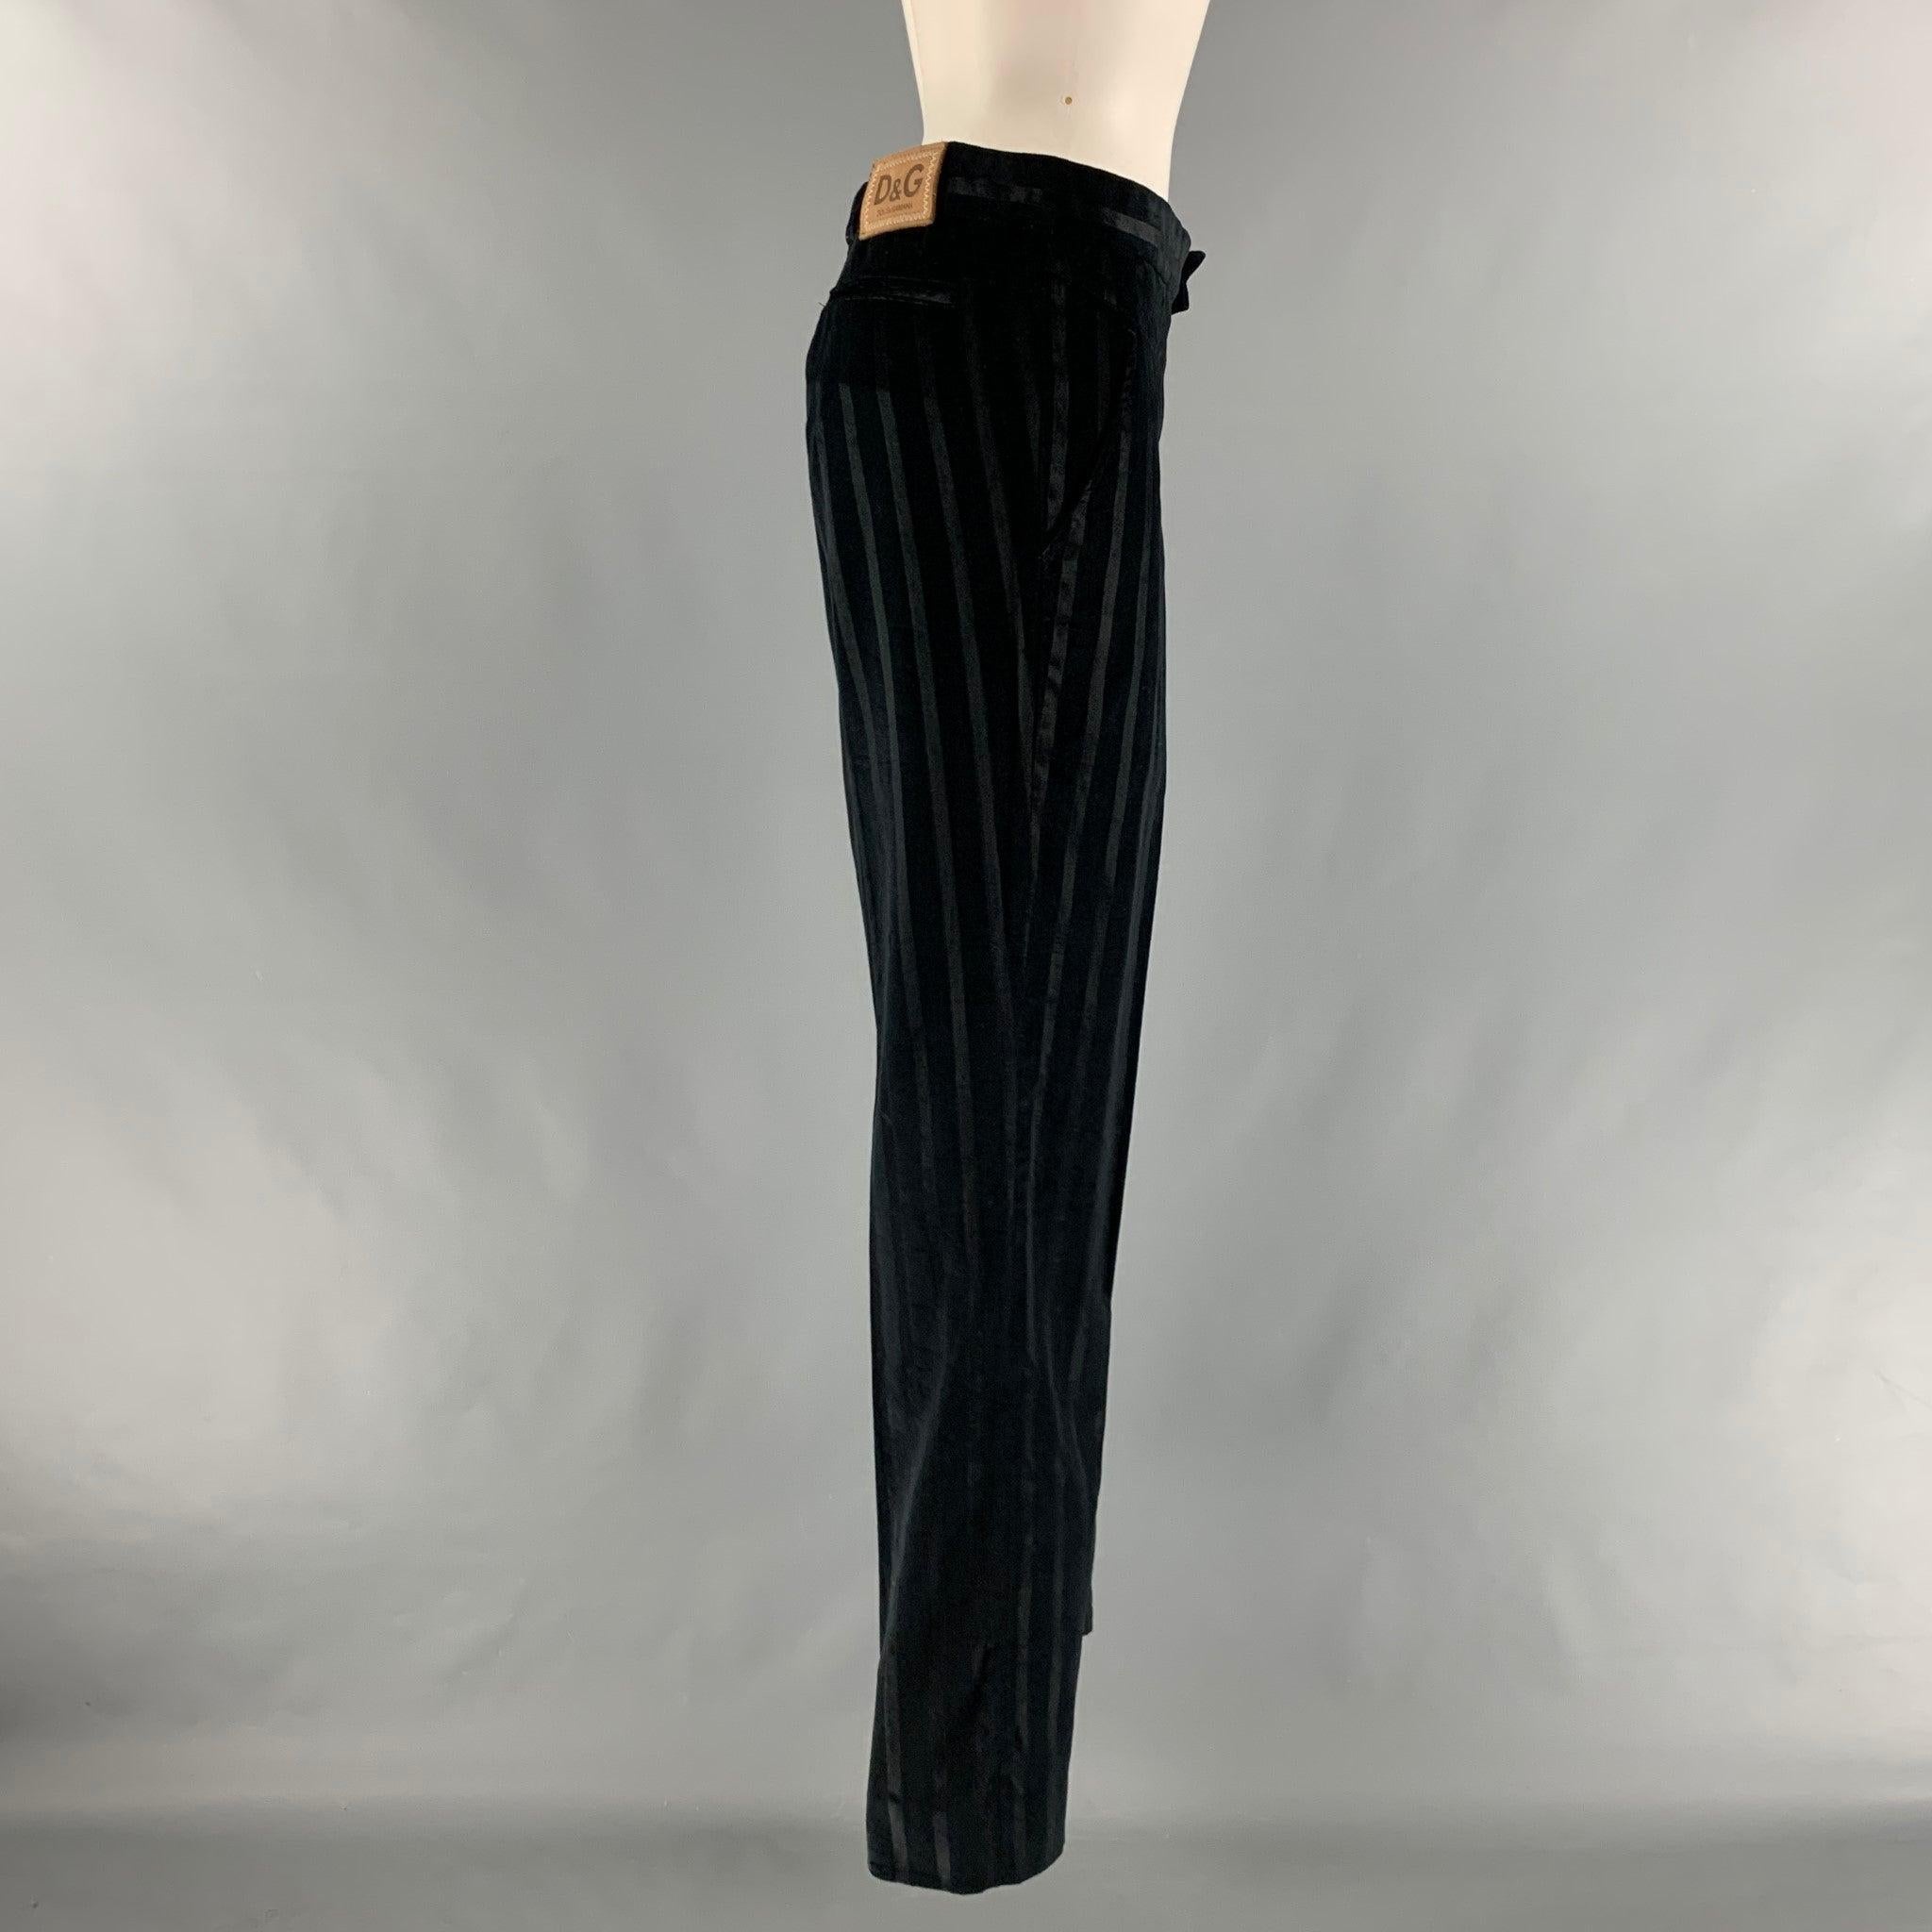 D&G by DOLCE & GABBANA Pantalon habillé en coton viscose à rayures noires Taille 34 Excellent état - En vente à San Francisco, CA